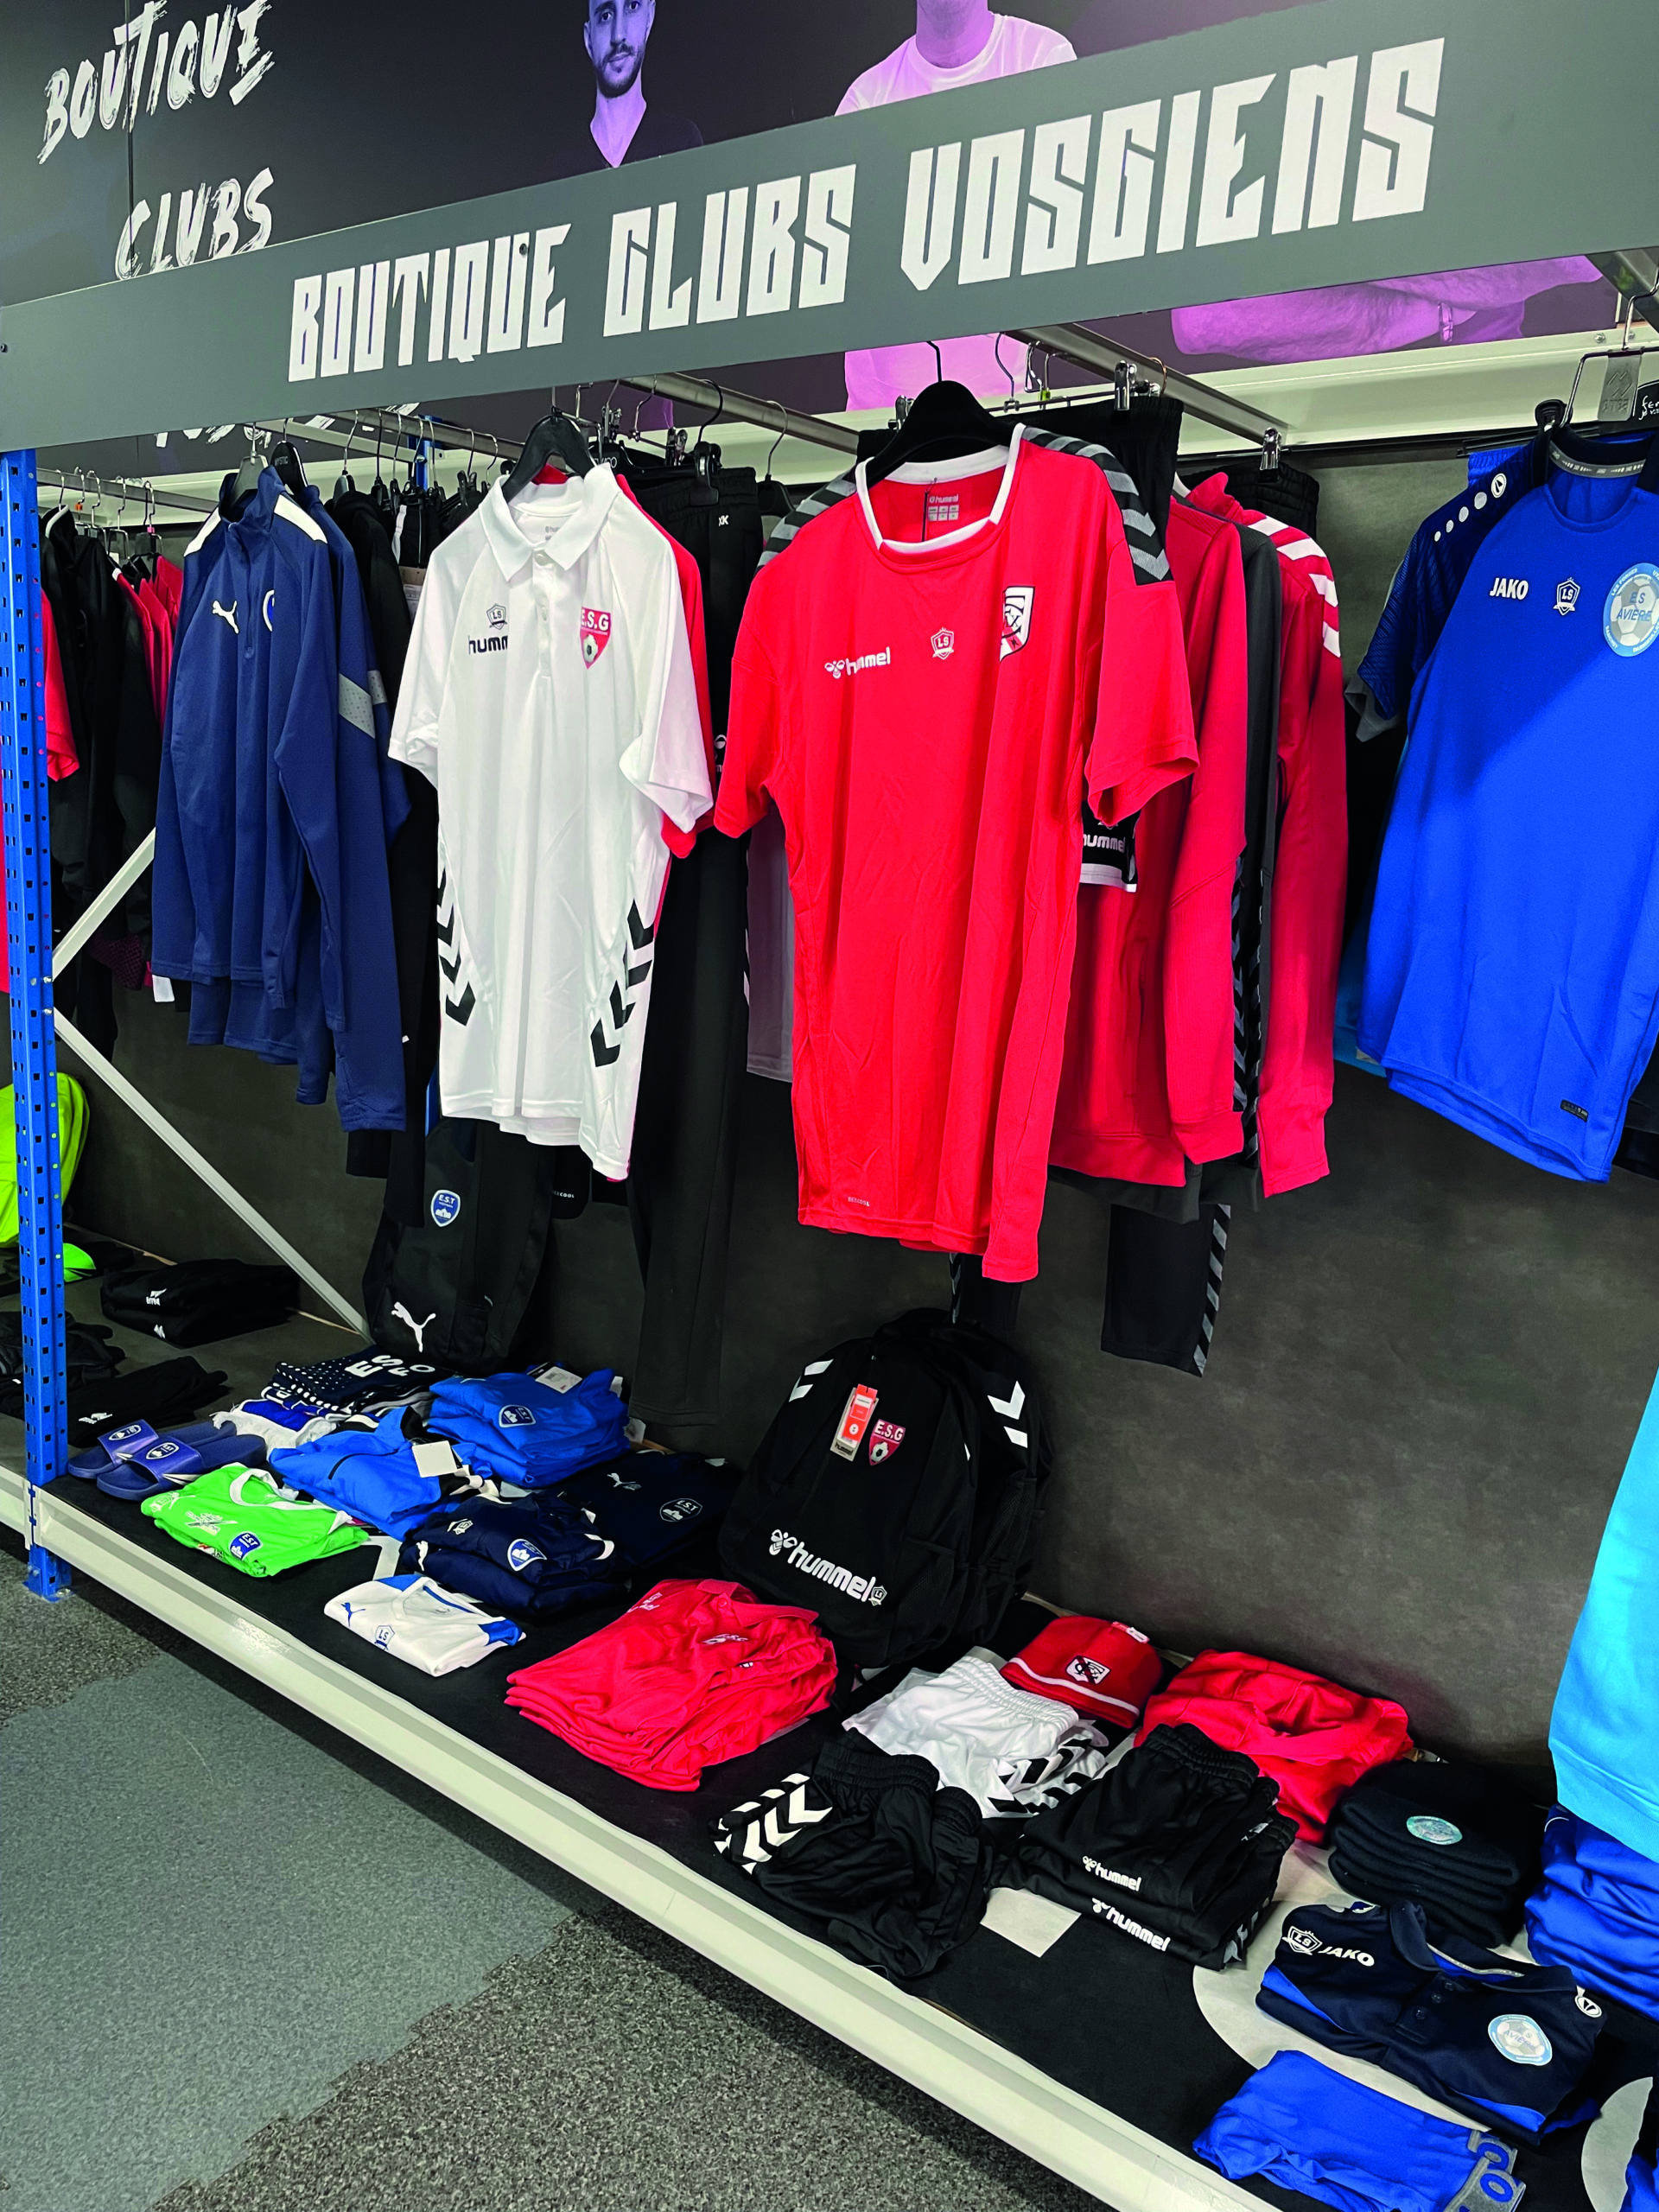 La boutique des clubs vosgiens à l'intérieur du nouveau magasin Lulusport et Endurance Shop sont désormais installés à Chavelot.